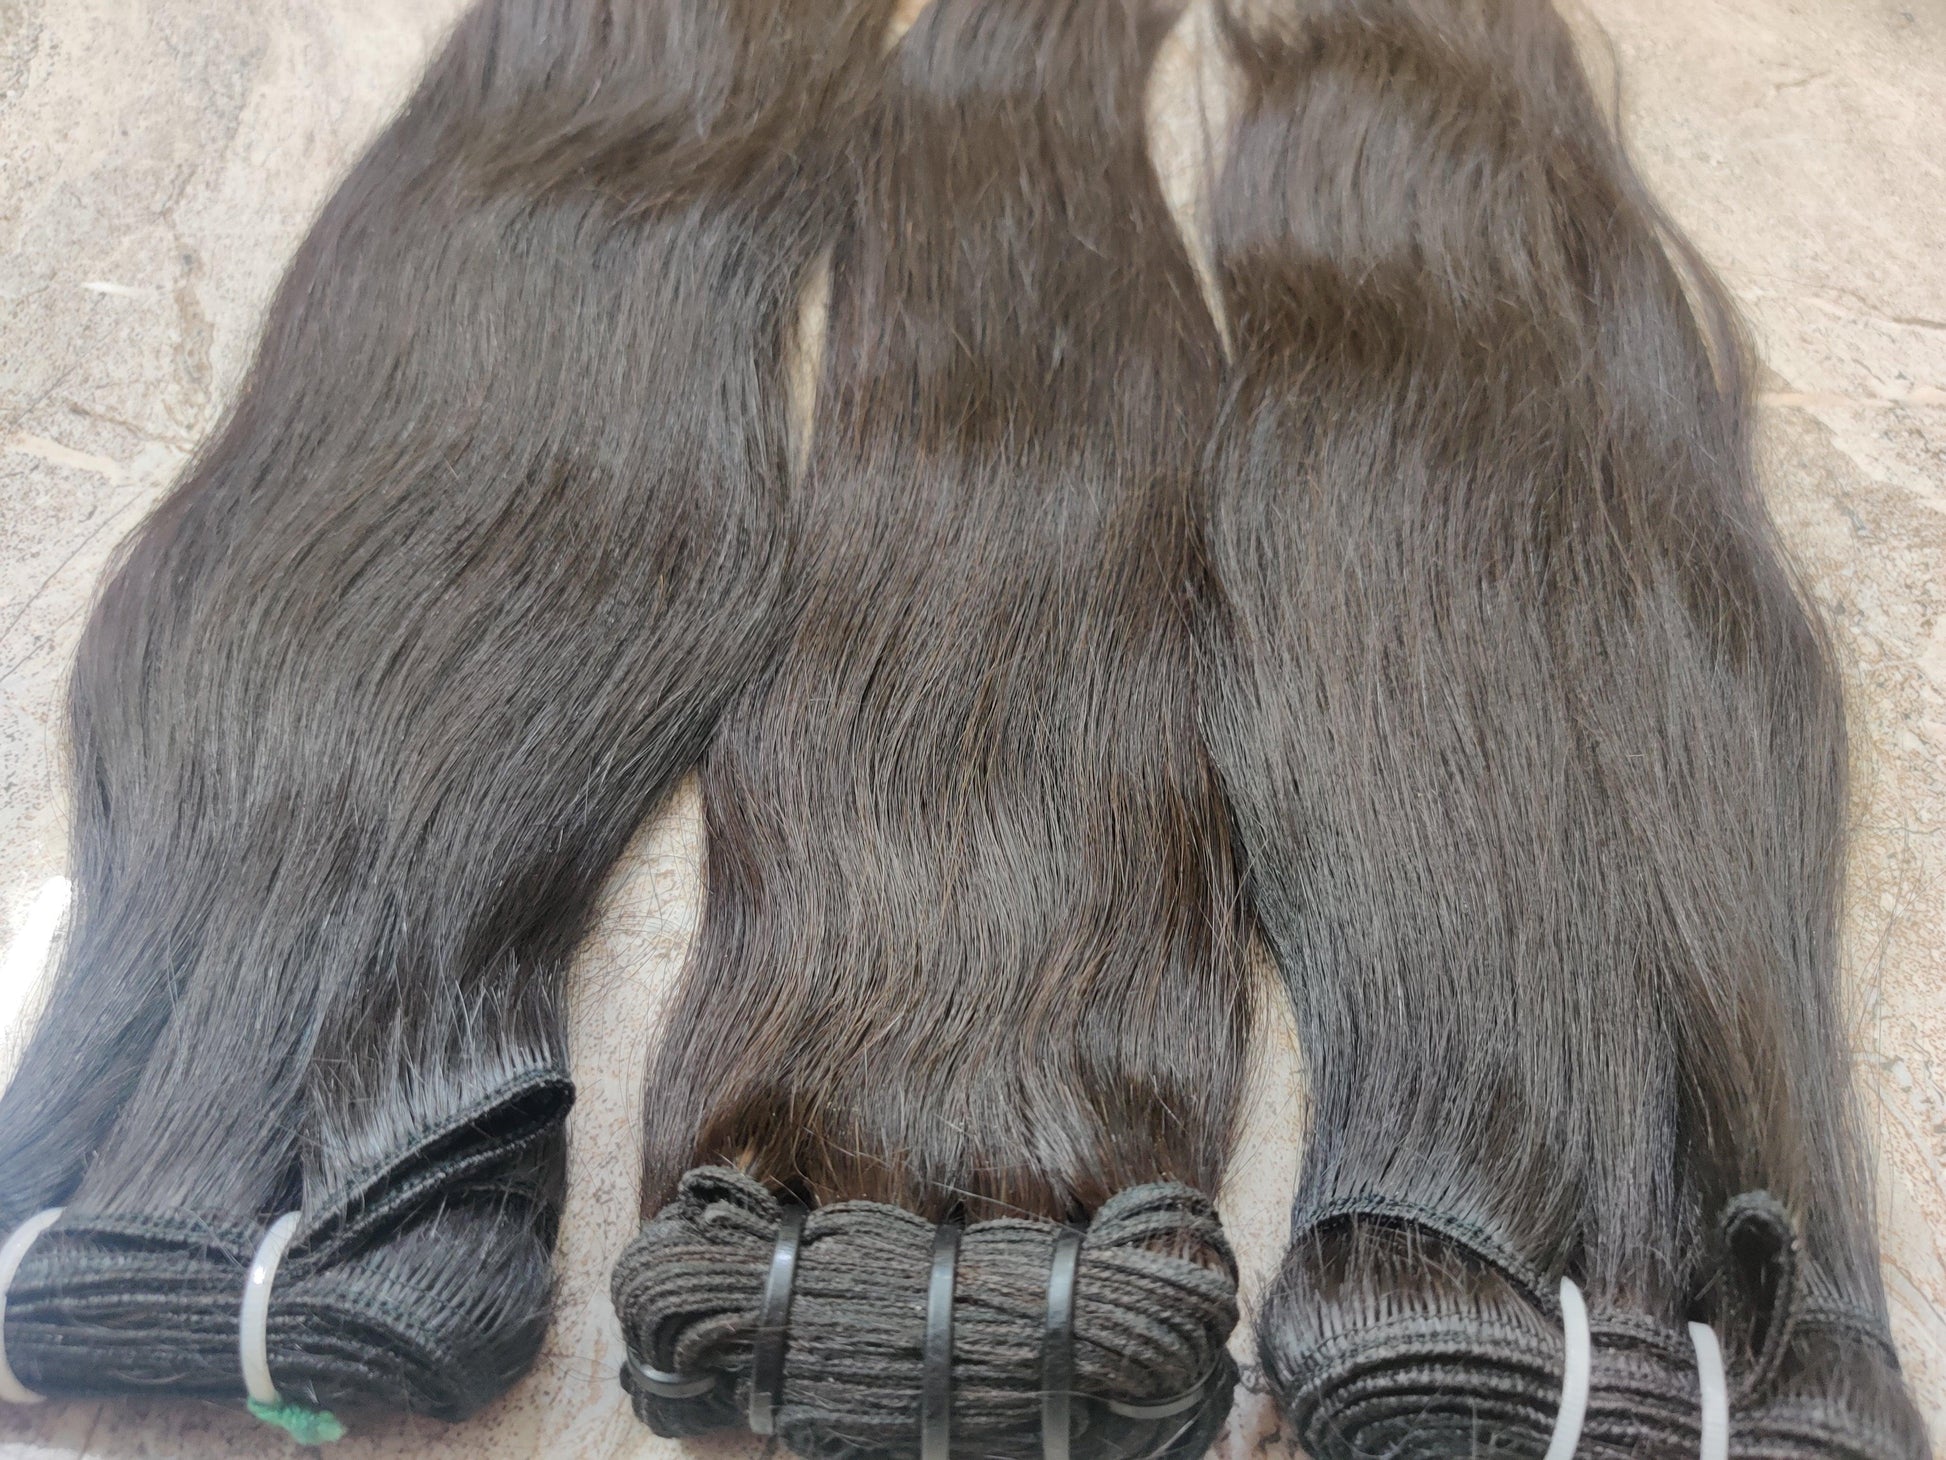 Peruvian Straight Hair Bundles Human Hair Extensions - Curly Hair Suppliers